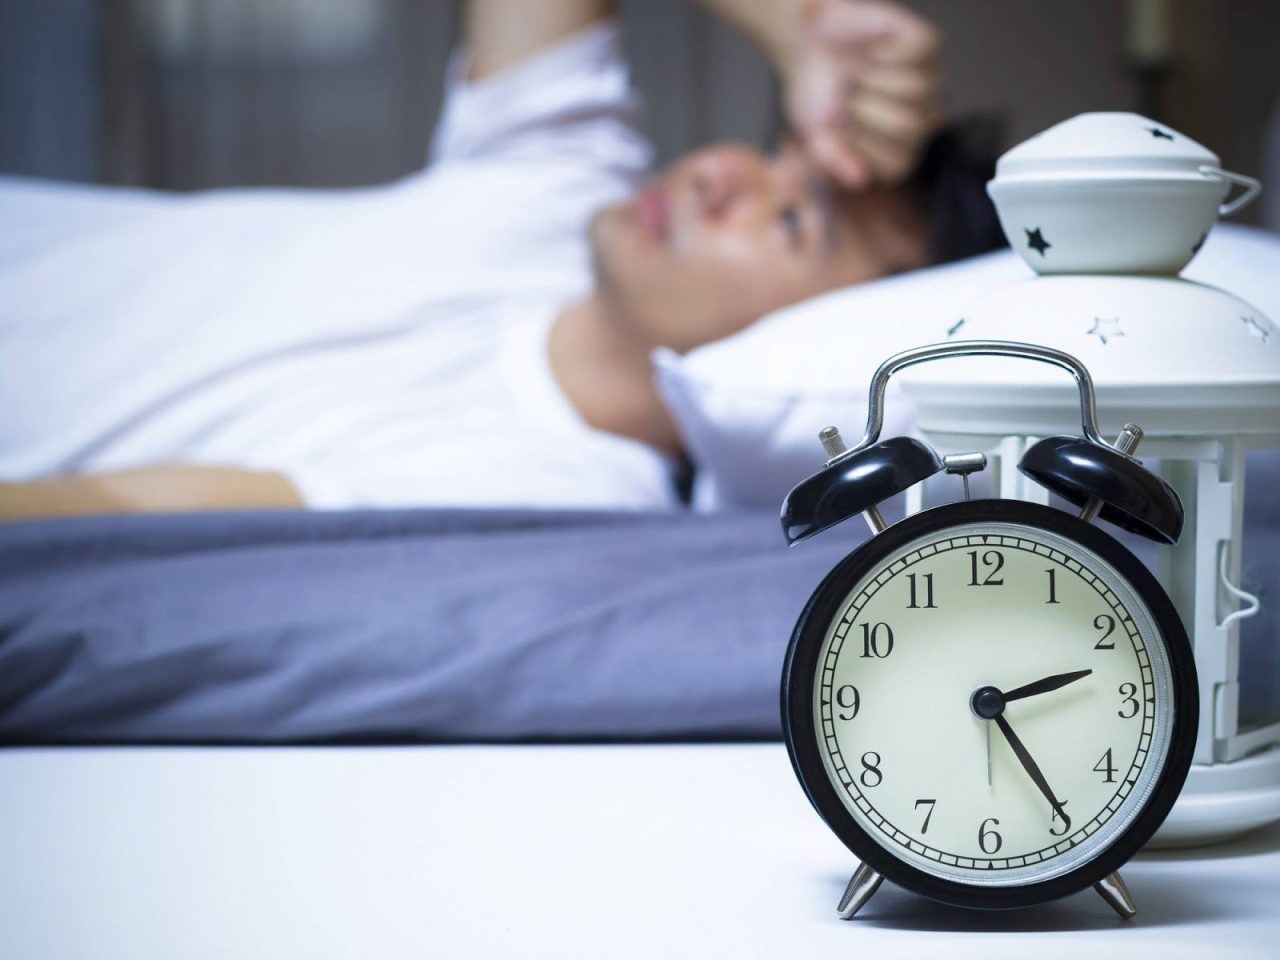 Cái nóng và độ ẩm có thể ảnh hưởng đến giấc ngủ?
